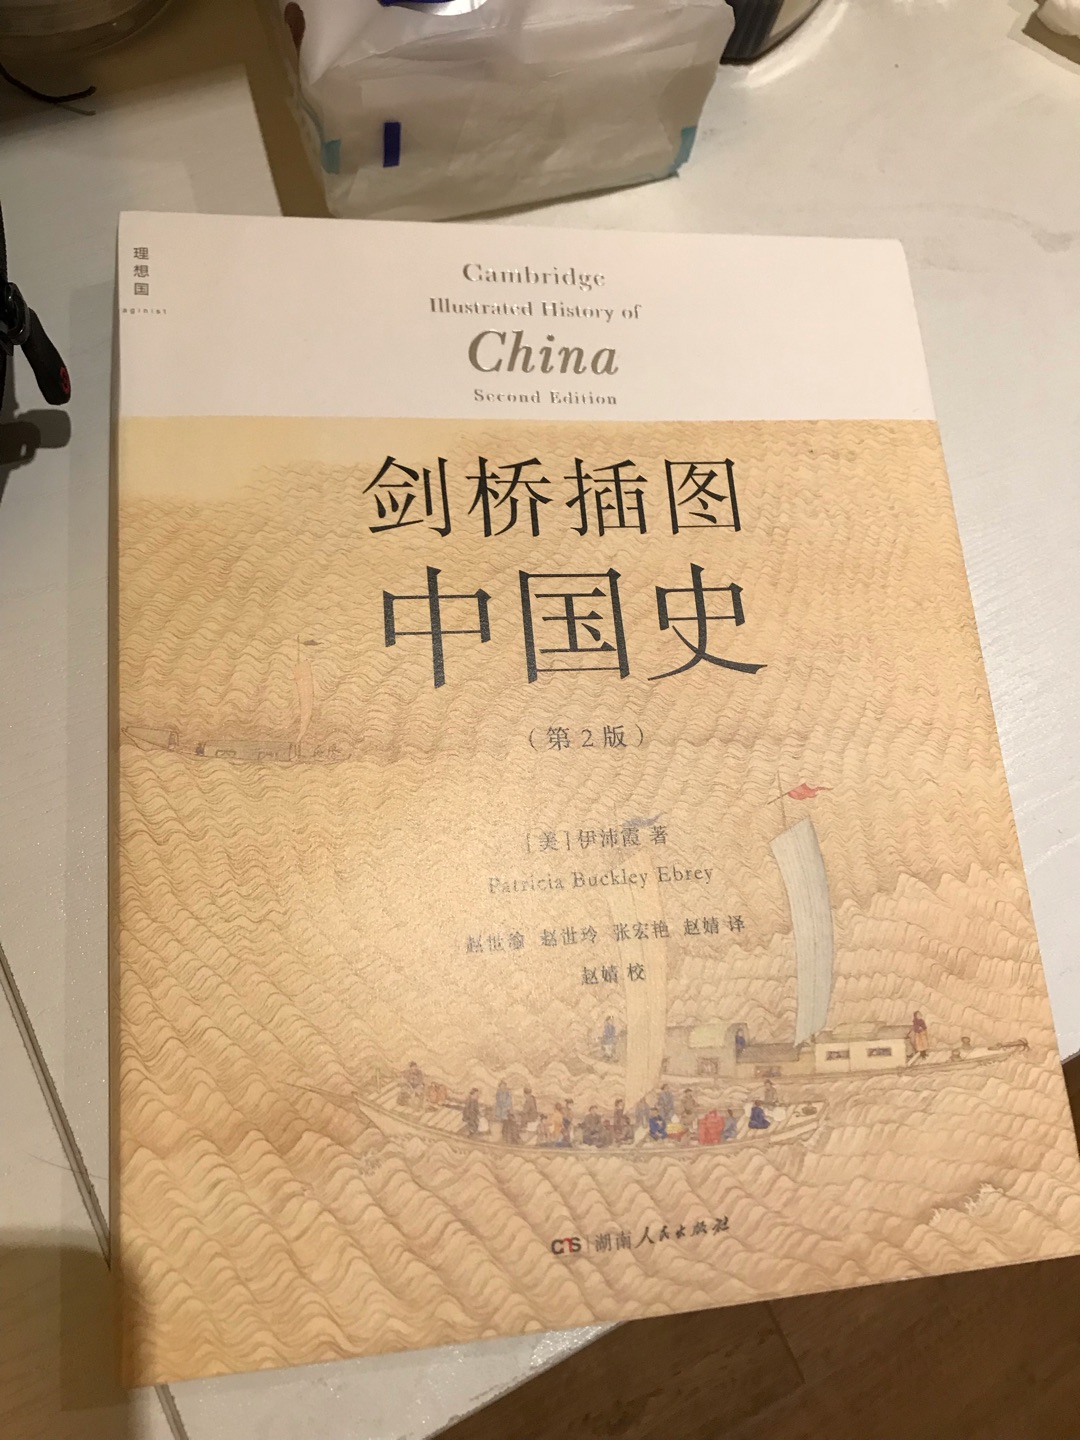 以前买过剑桥中国史的大部头，这次买来个简易版的中国史读一读，系统性的掌握历史脉络。